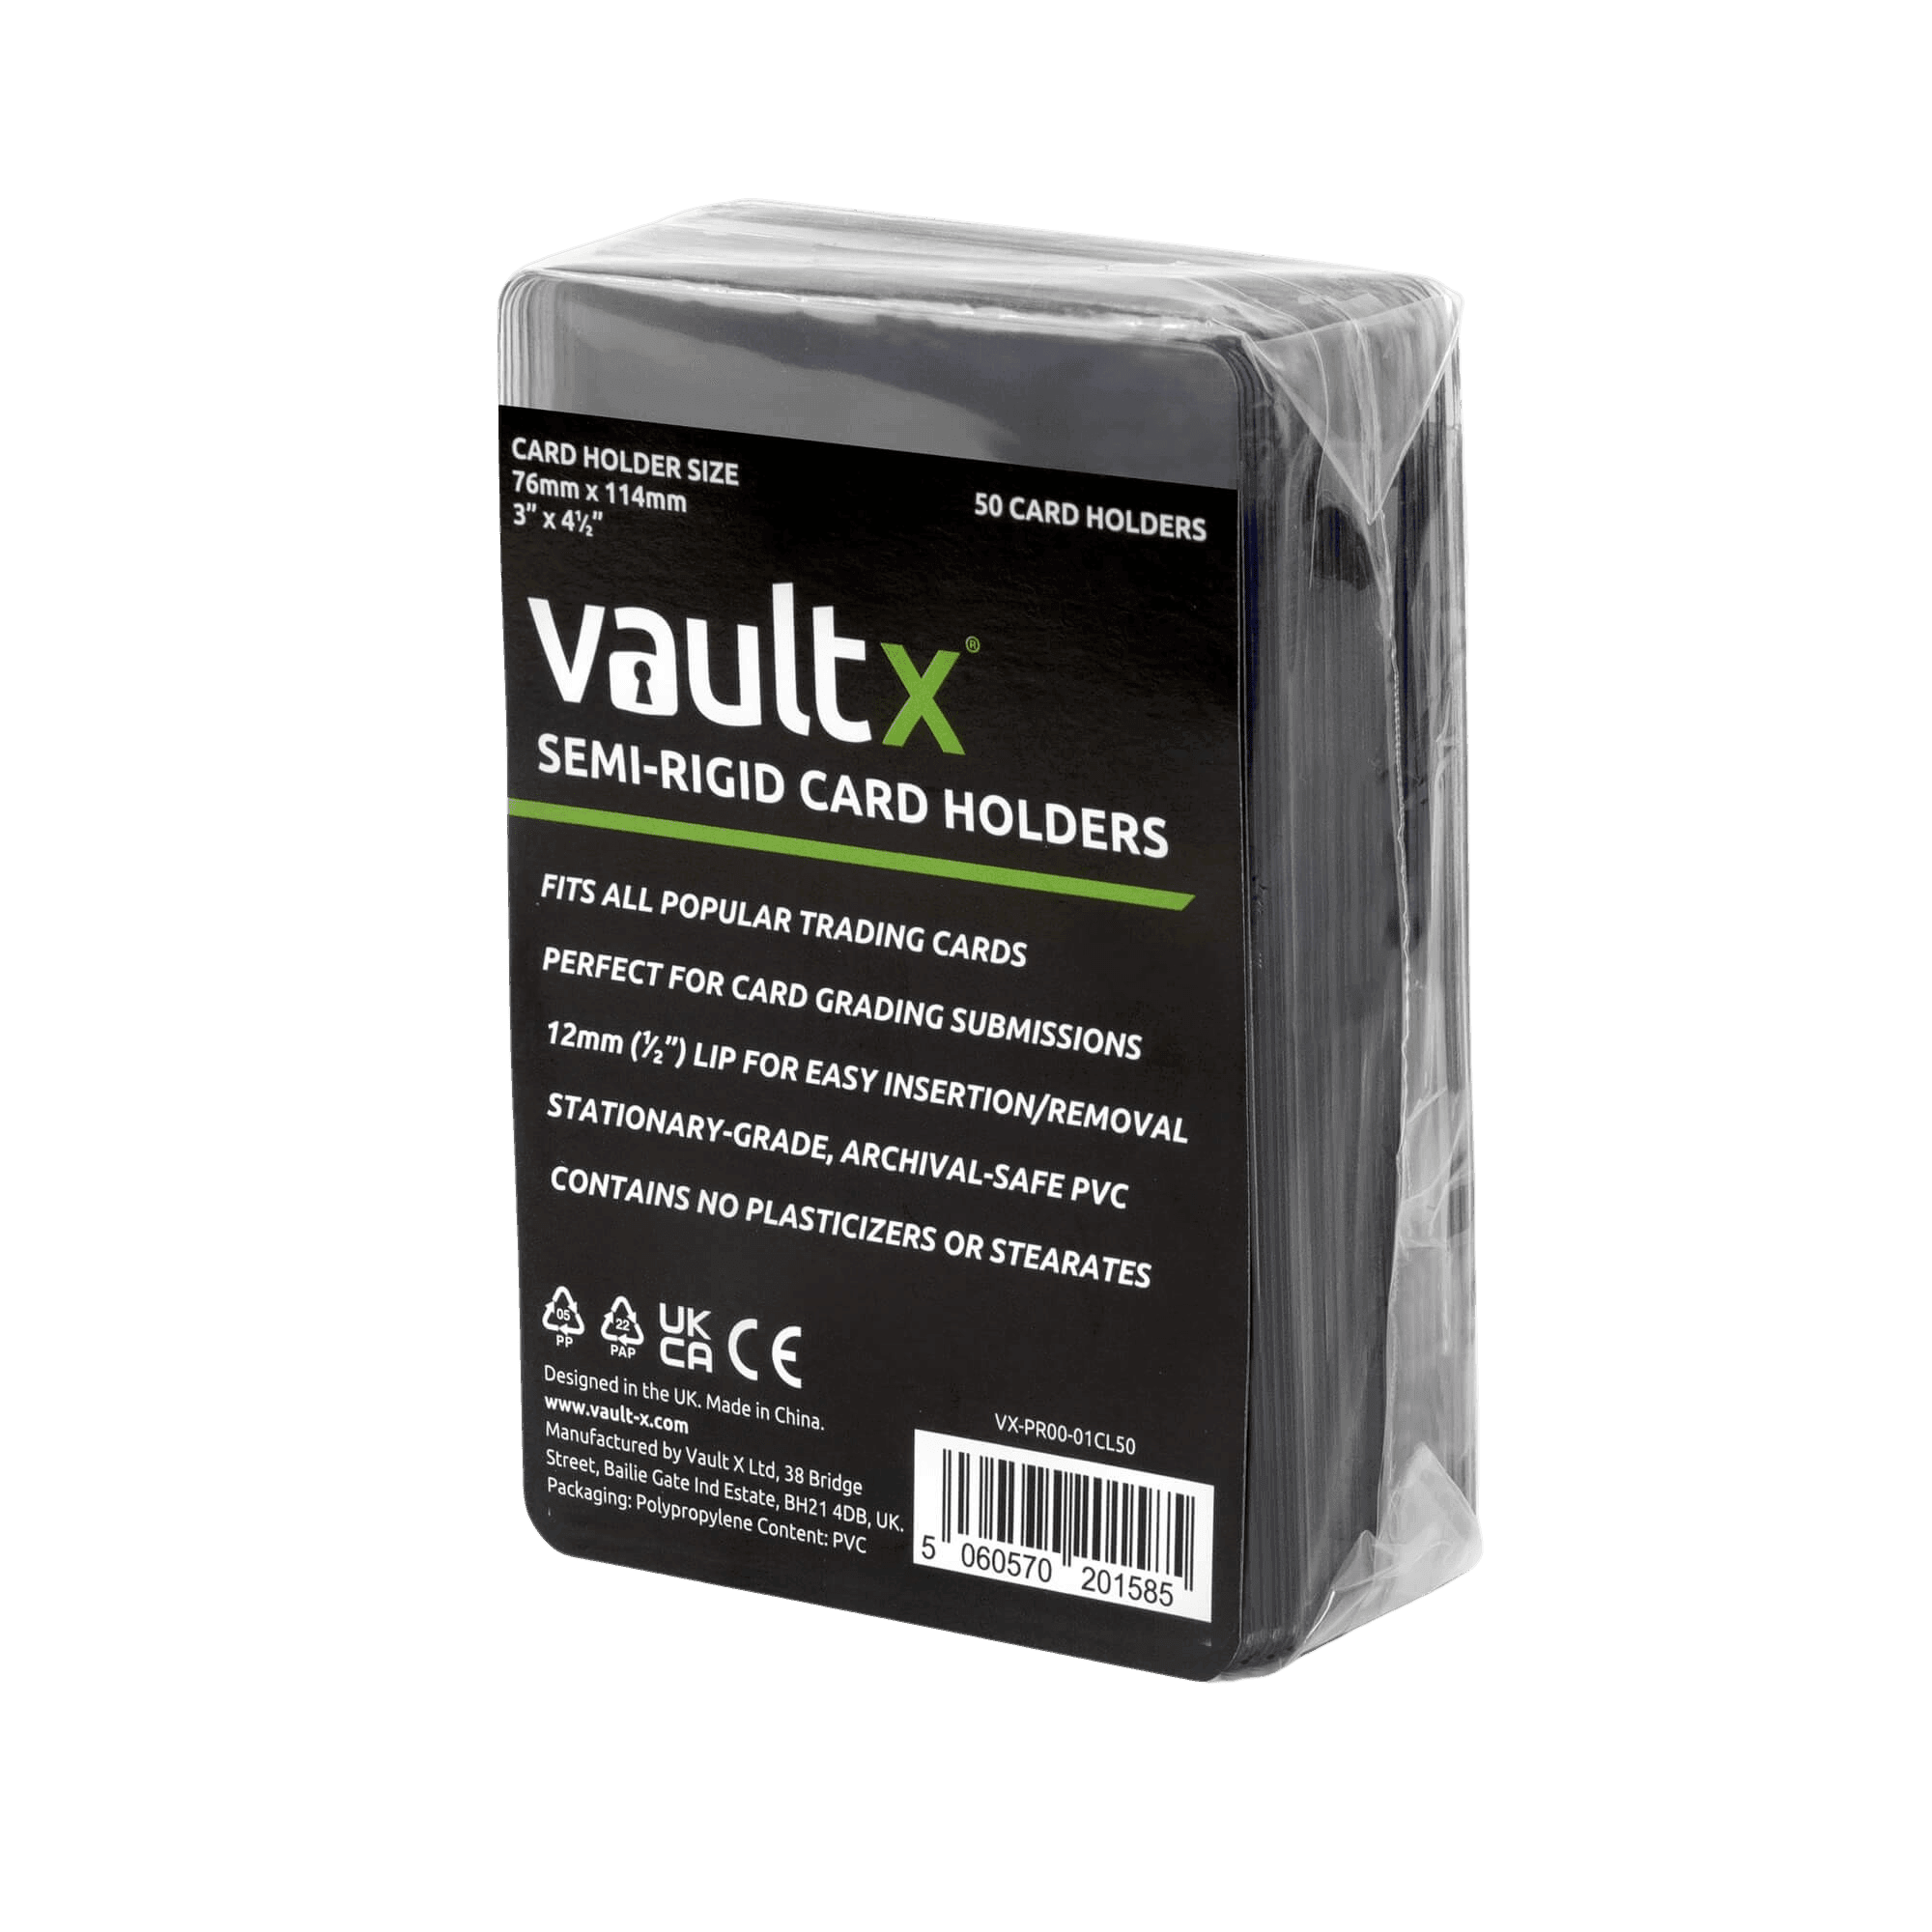 Vault X Slim Semi-Rigid Card Holders (50 Pack) - The Card Vault